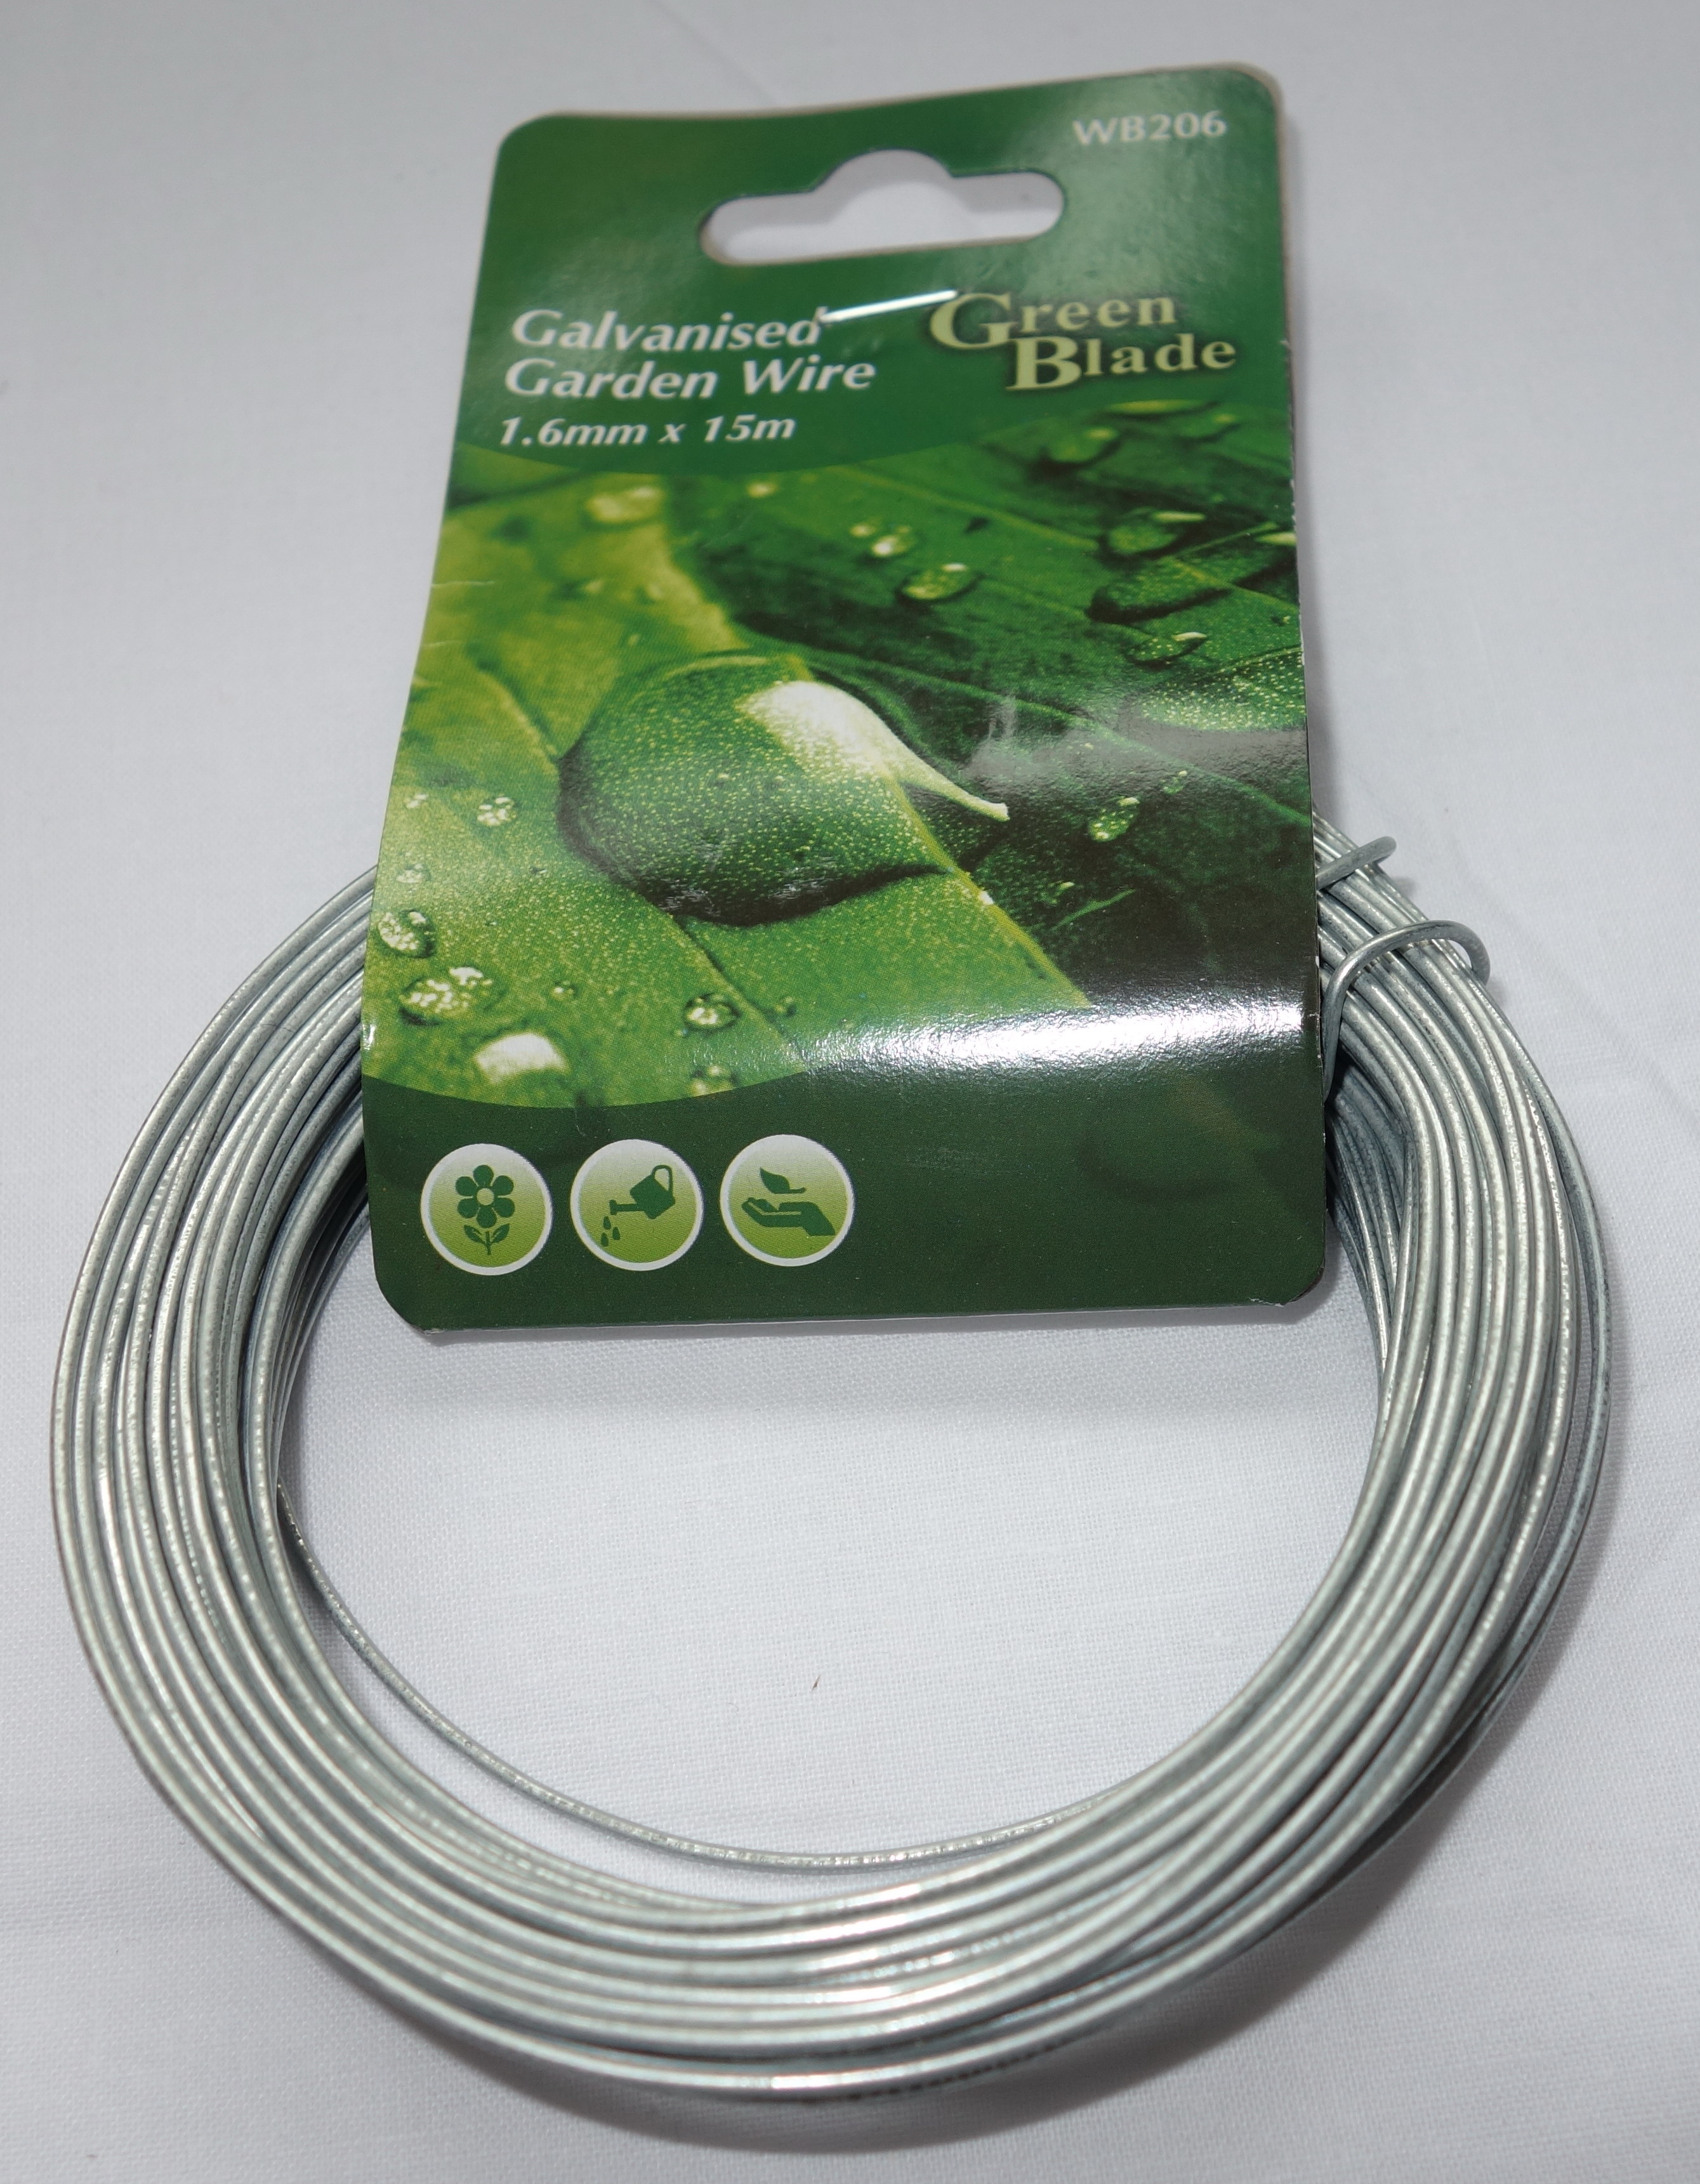 Galvanised Garden Wire 1.6mm x 15m WB206 Green Blade Gardening 